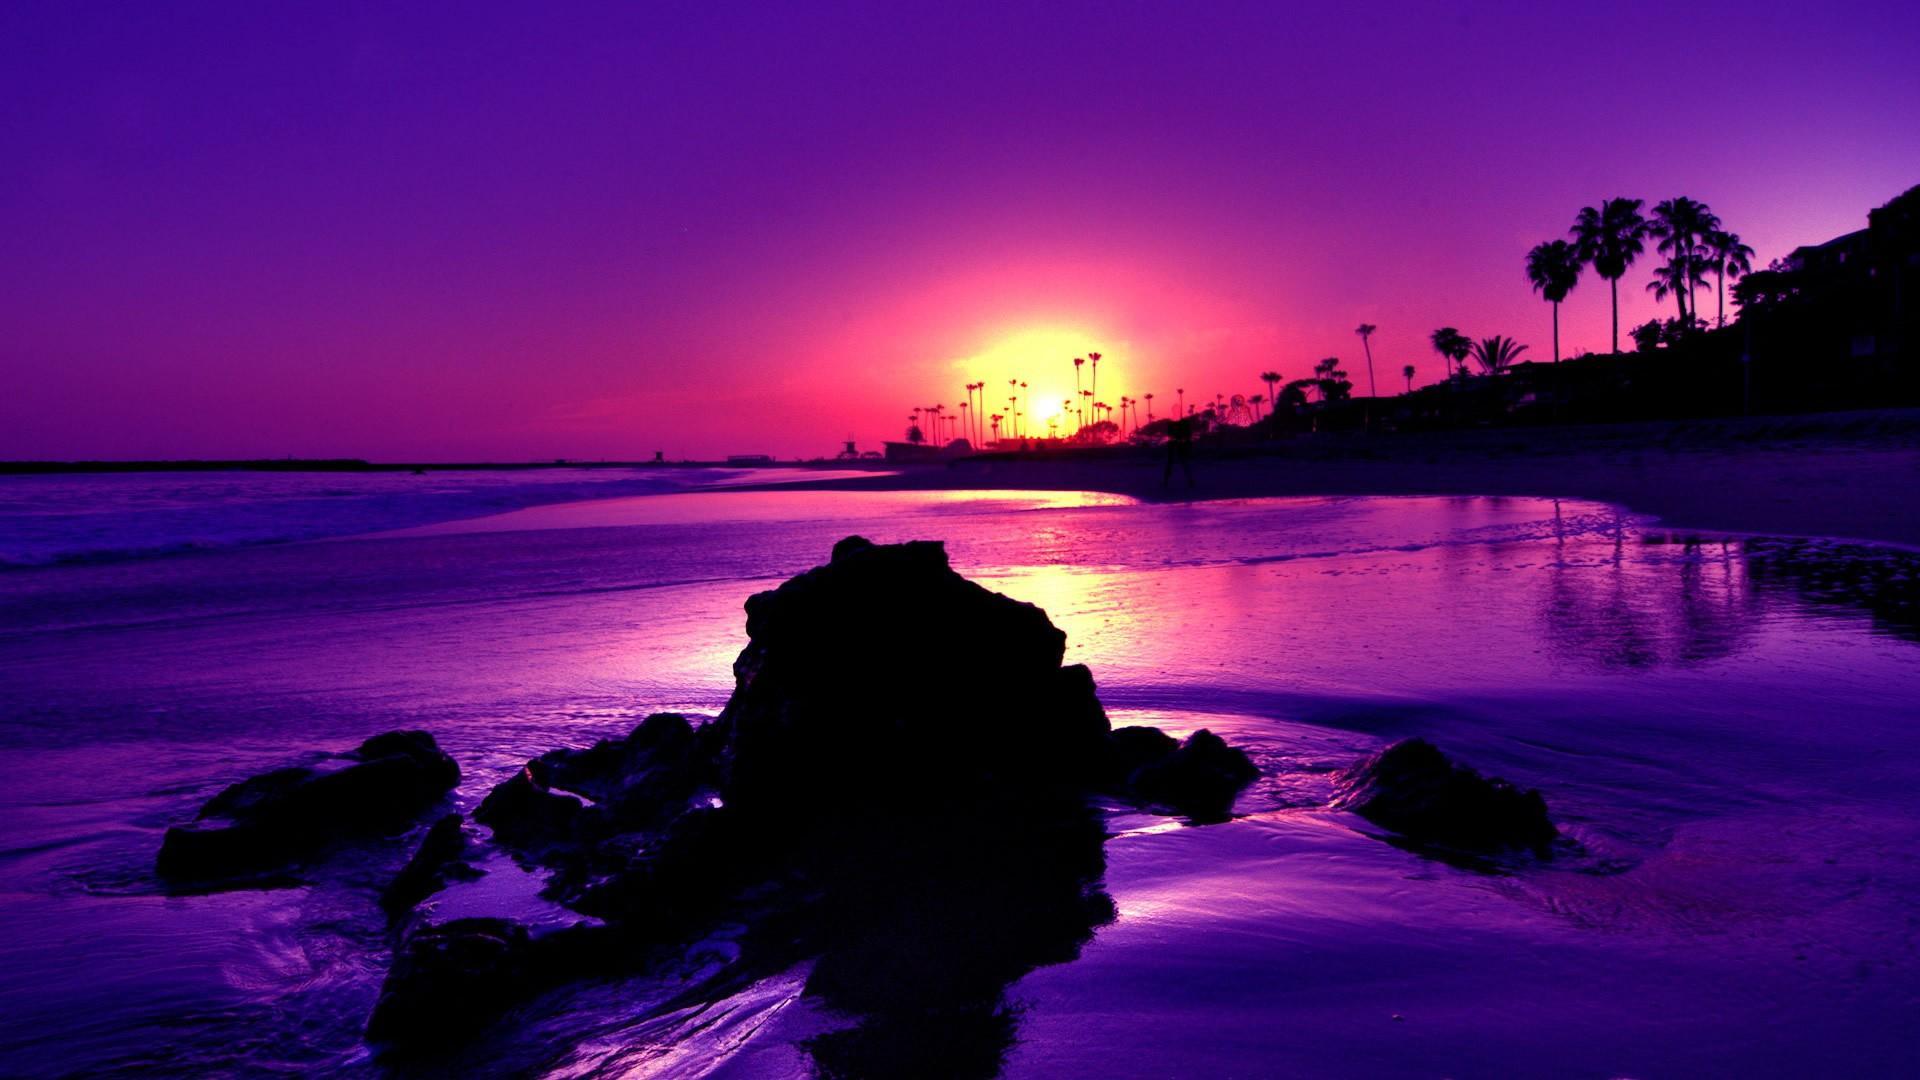 Purple Beach Sunset Wallpaper